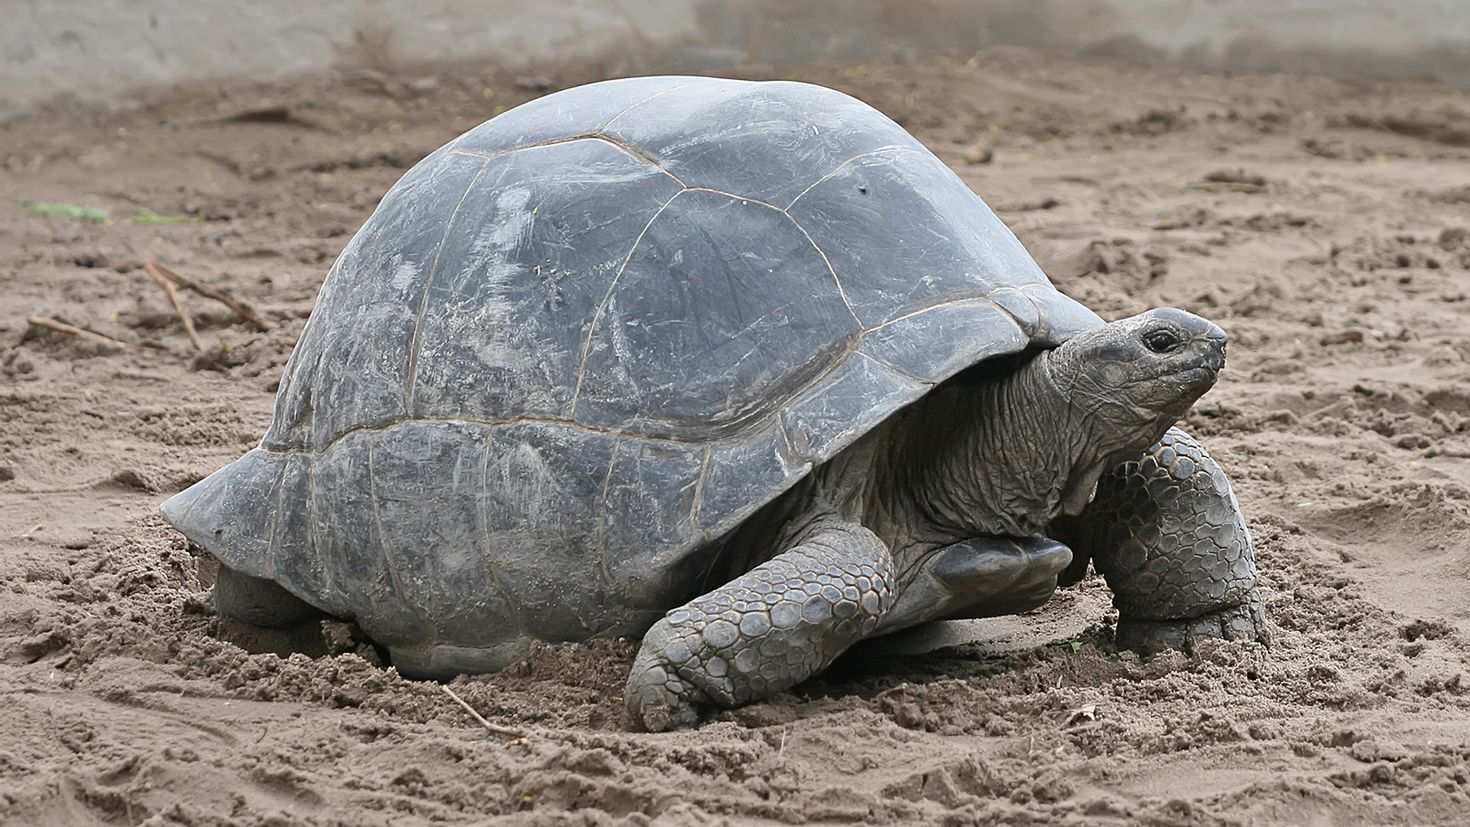 Aldabra giant Tortoise